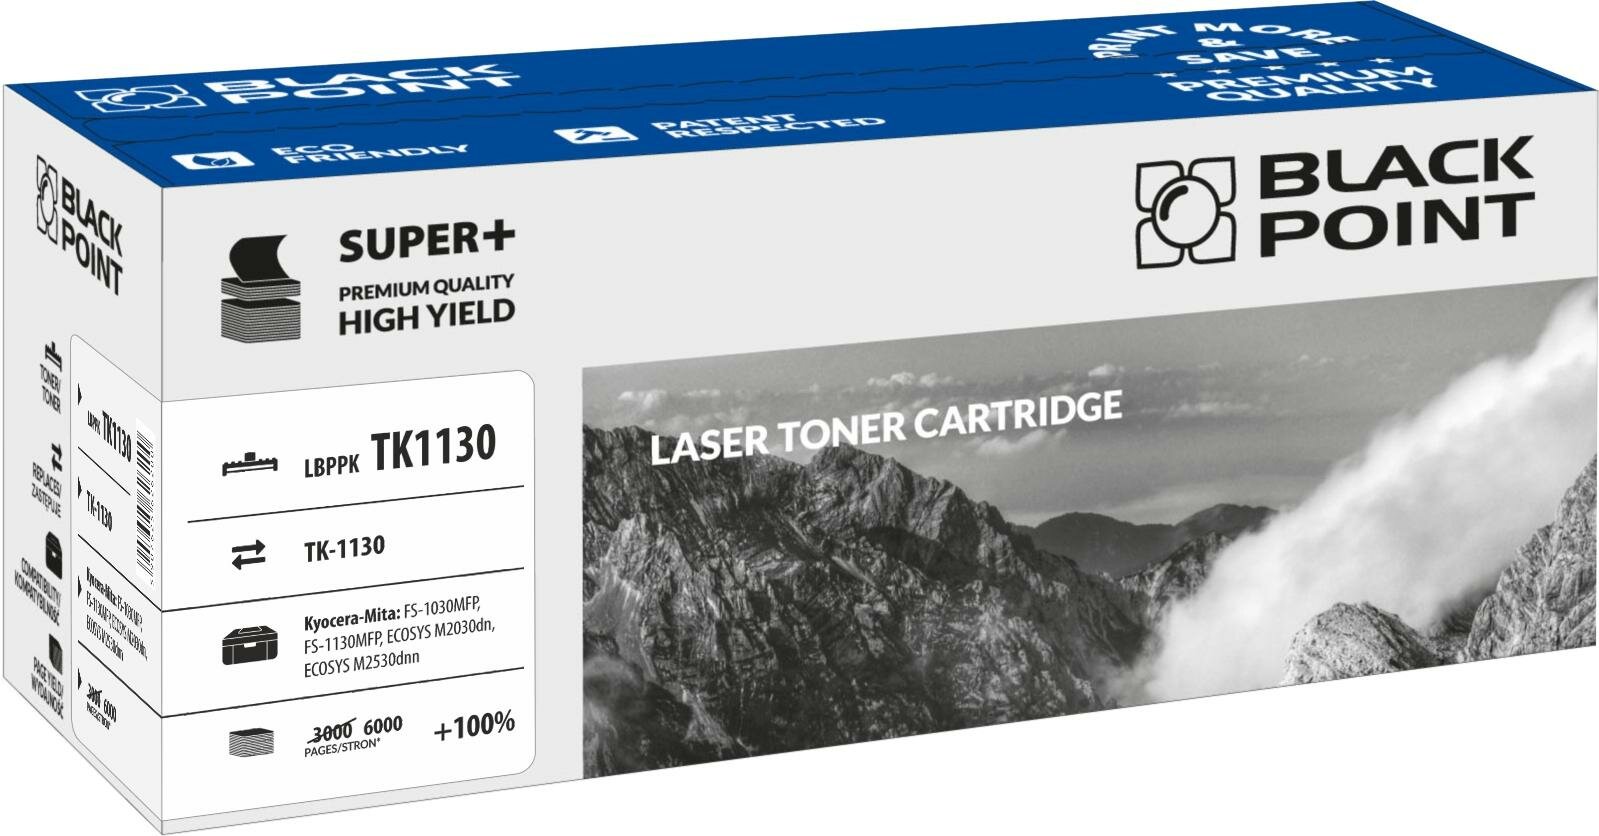 Toner laserowy Black Point Super Plus LBPPKTK1130 widok pod kątem na opakowanie